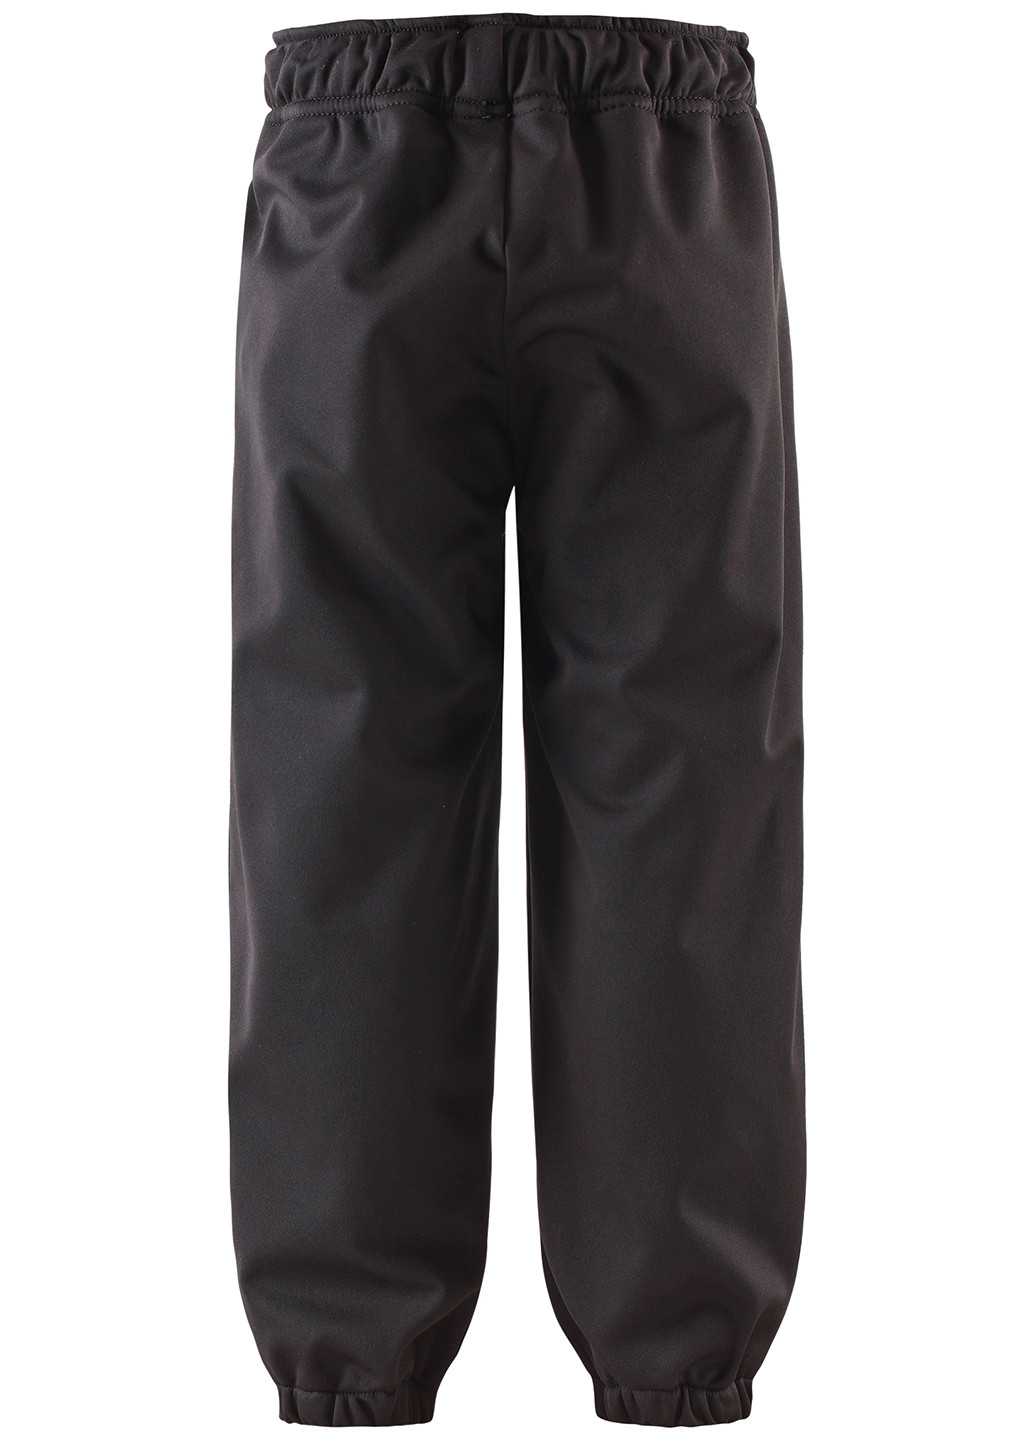 Черные спортивные демисезонные брюки со средней талией Lassie by Reima